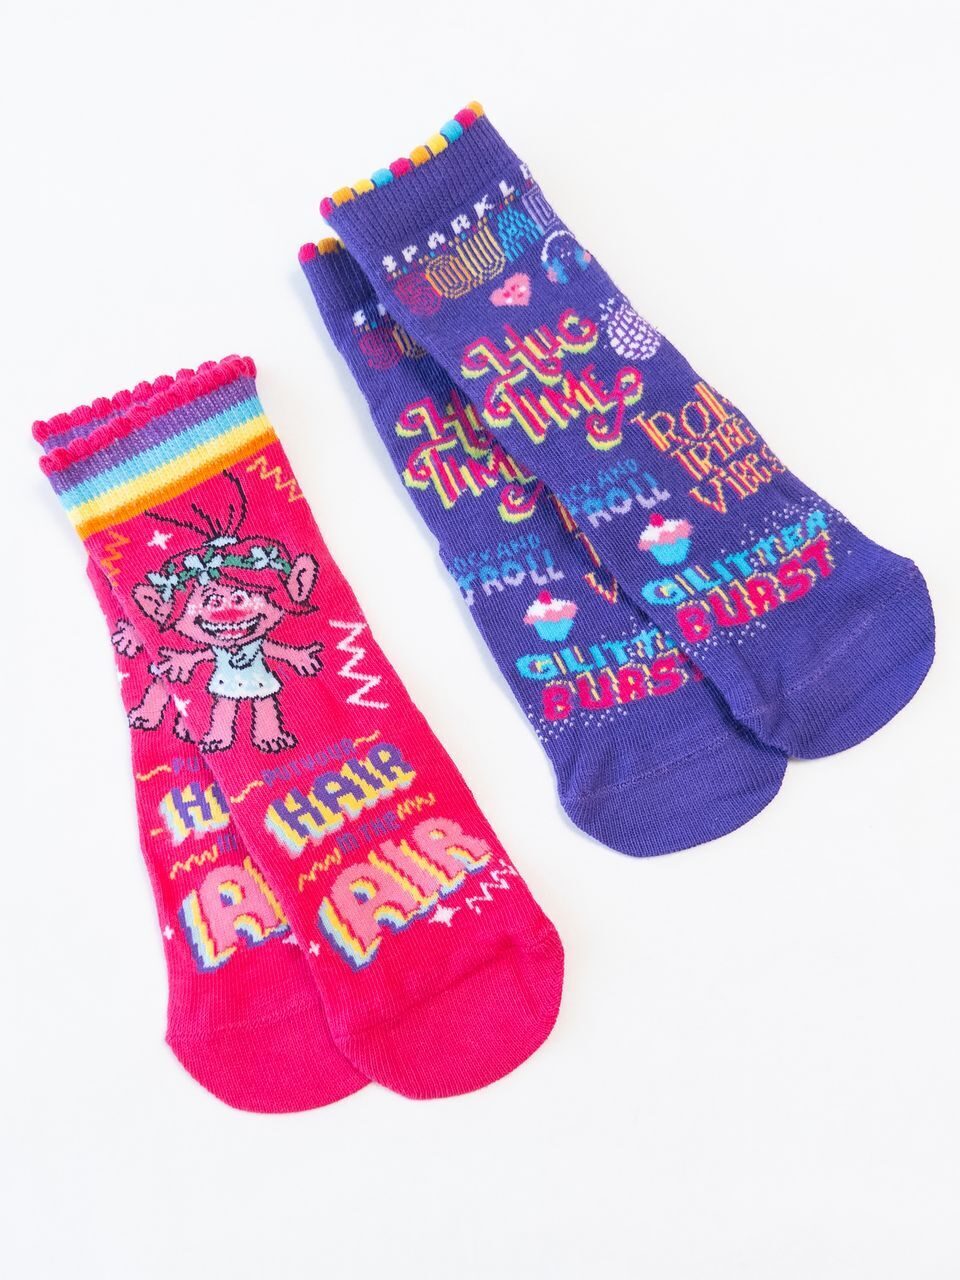 Носки хлопковые комплект из 2 пар для девочки принт Тролли цвет фиолетовый/розовый стопа 12-14 см 20-22 размер обуви George